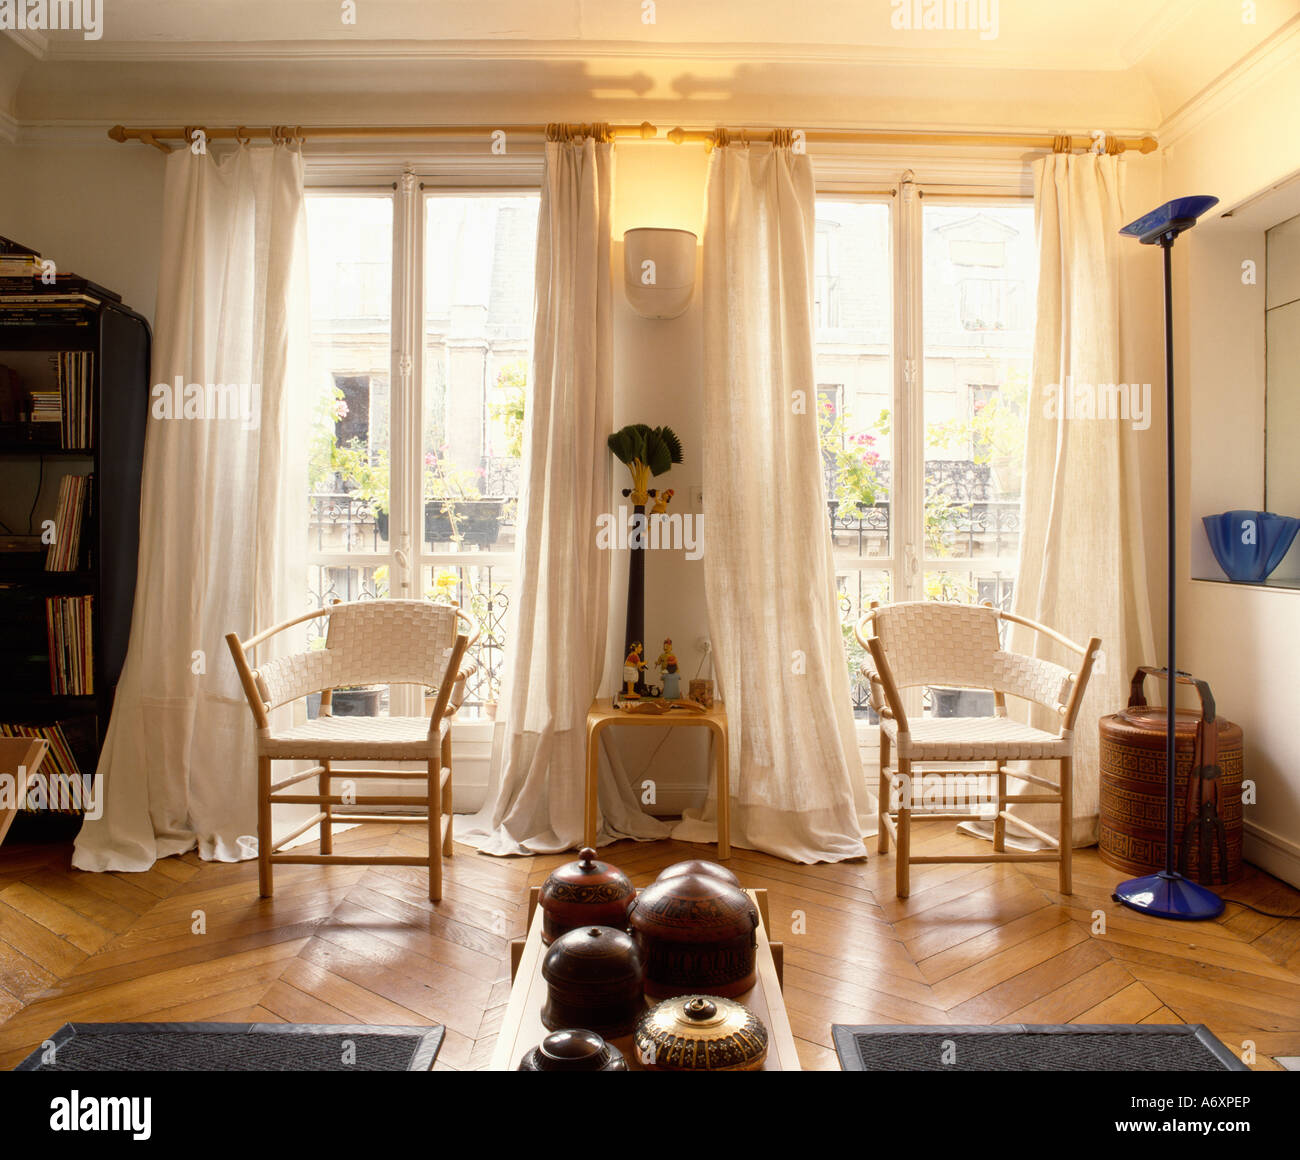 Stühle mit weißen sitzen und Holzrahmen vor hohen Doppelfenster mit weißen  Vorhängen im Wohnzimmer mit Parkettboden Stockfotografie - Alamy